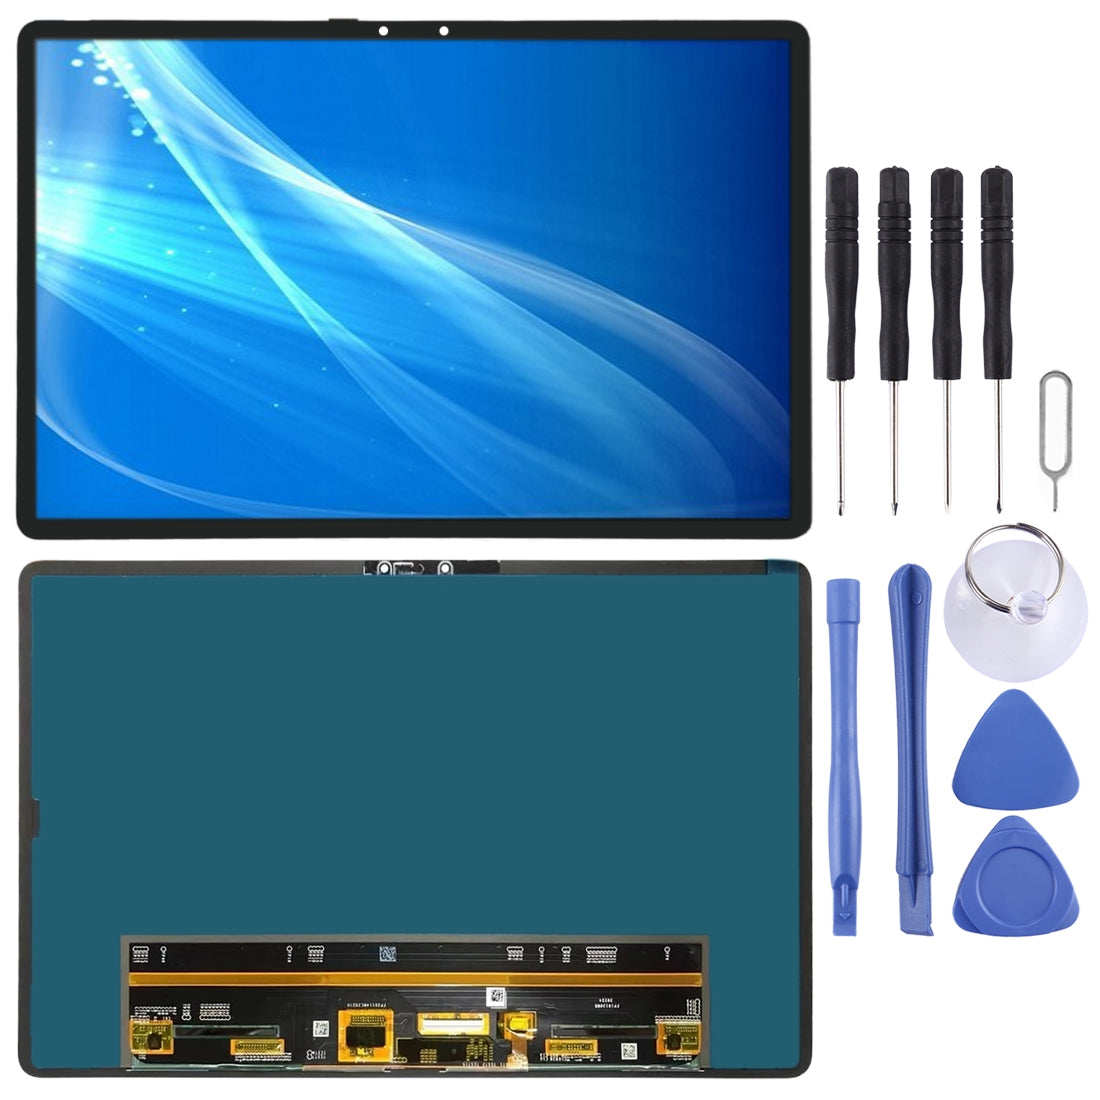 LCD Screen for Lenovo Smart Tab M10 FHD REL TB-X605 TB-X605LC TB